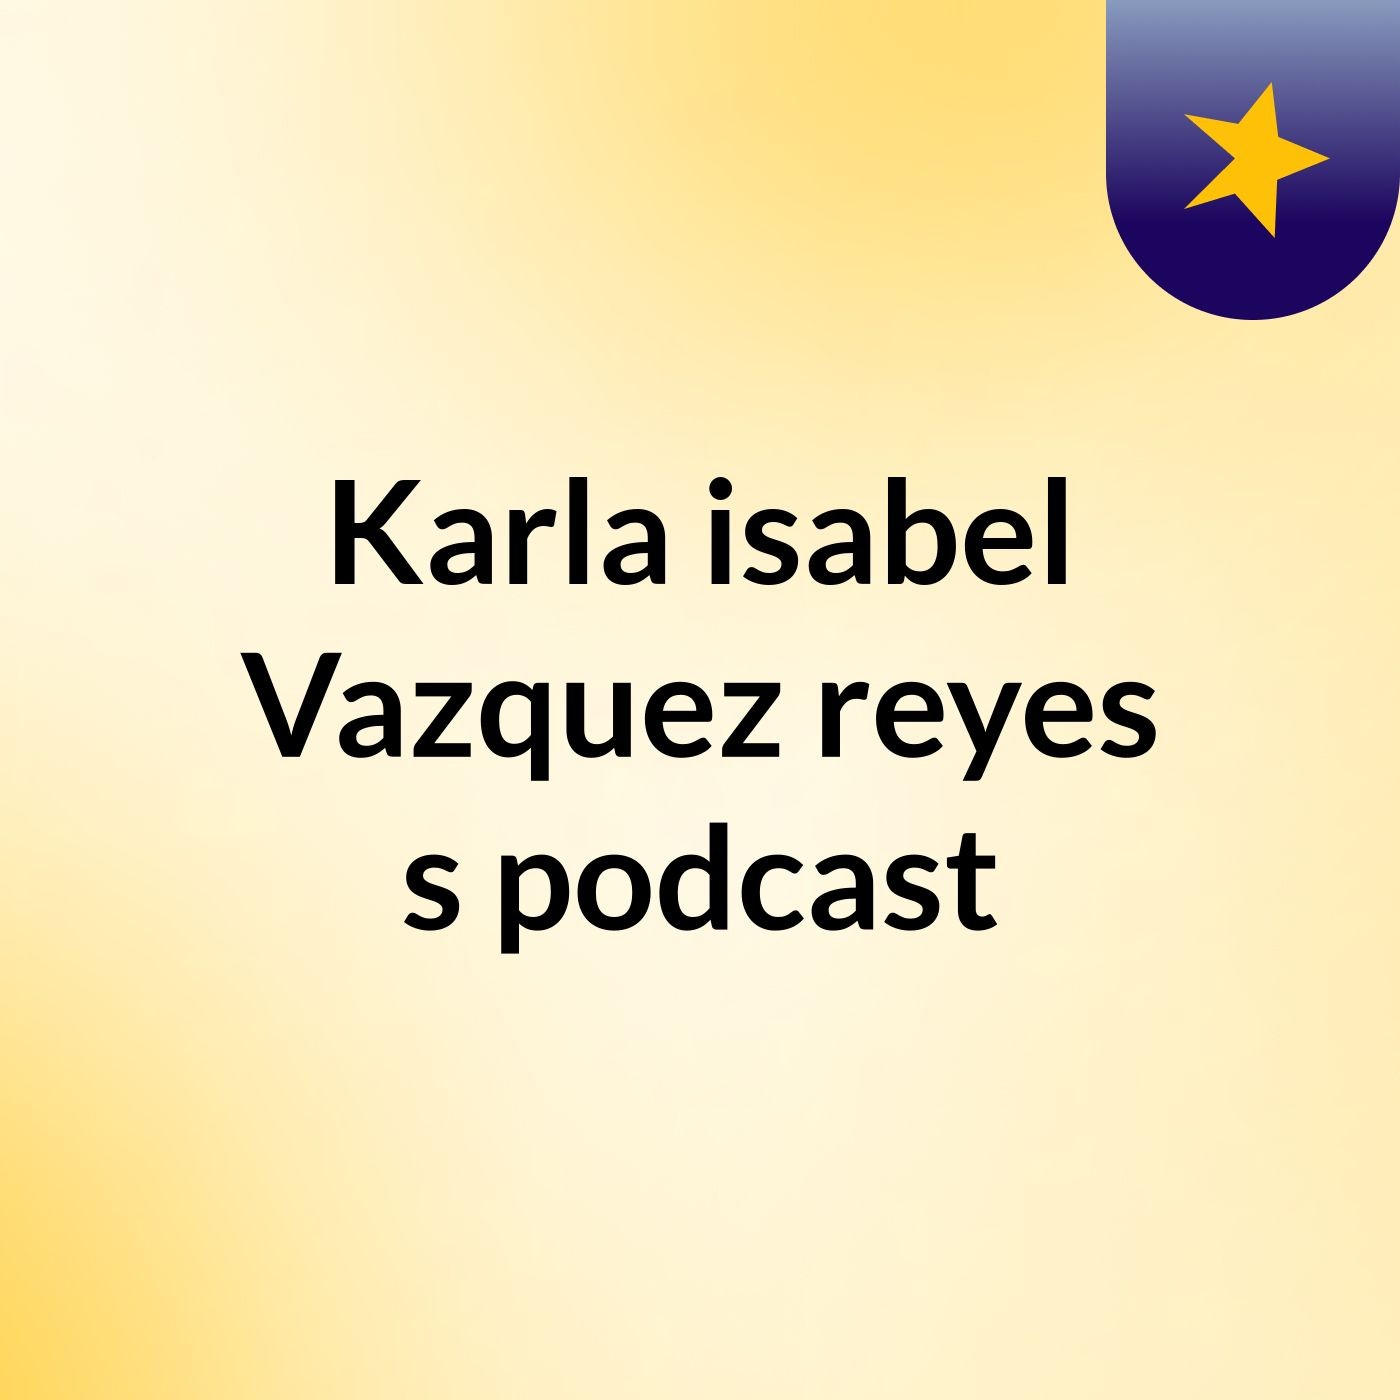 Karla isabel Vazquez reyes's podcast